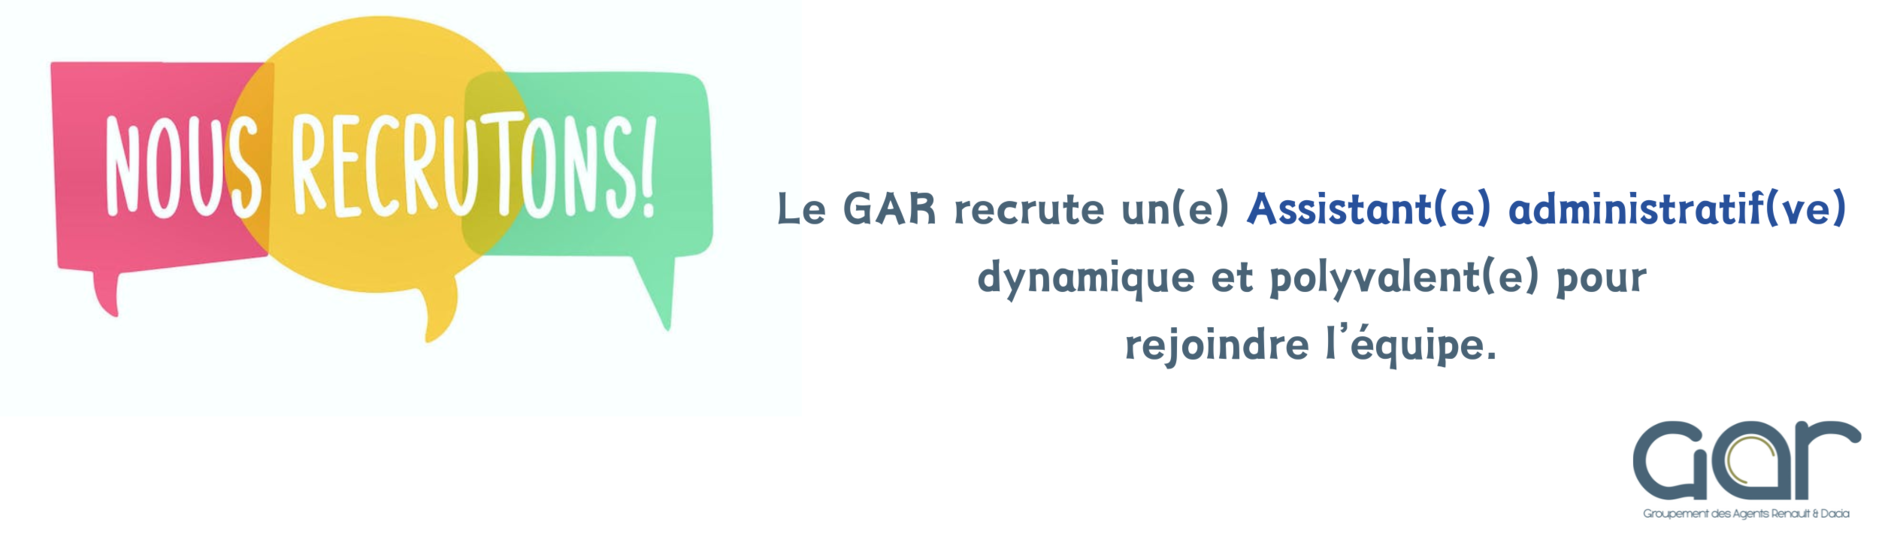 Le GAR recrute un(e) Assistant(e) administratif(ve) Voir l'offre.